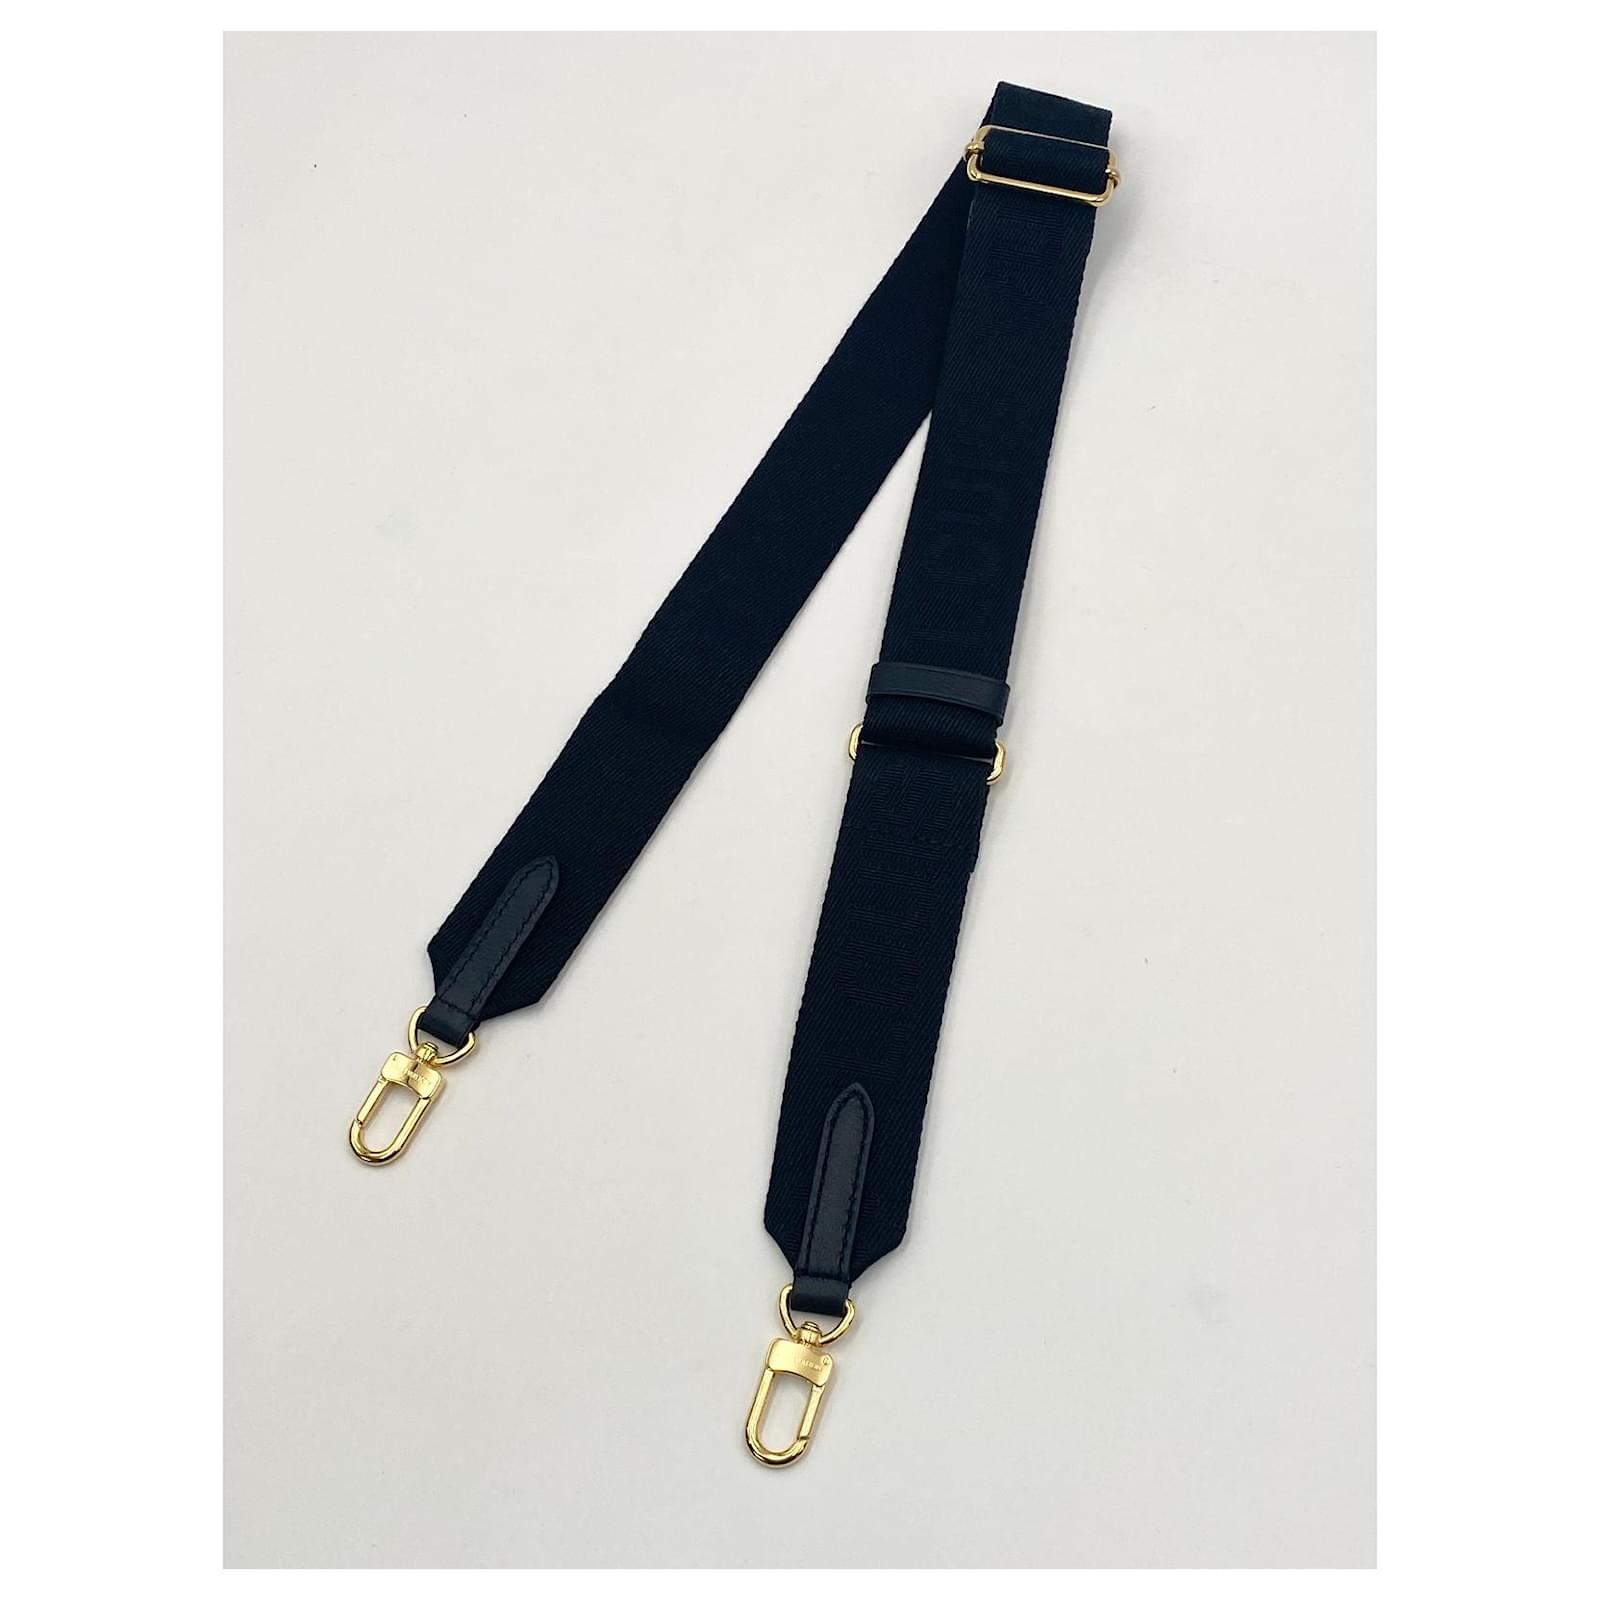 New black Louis Vuitton Coussin shoulder strap